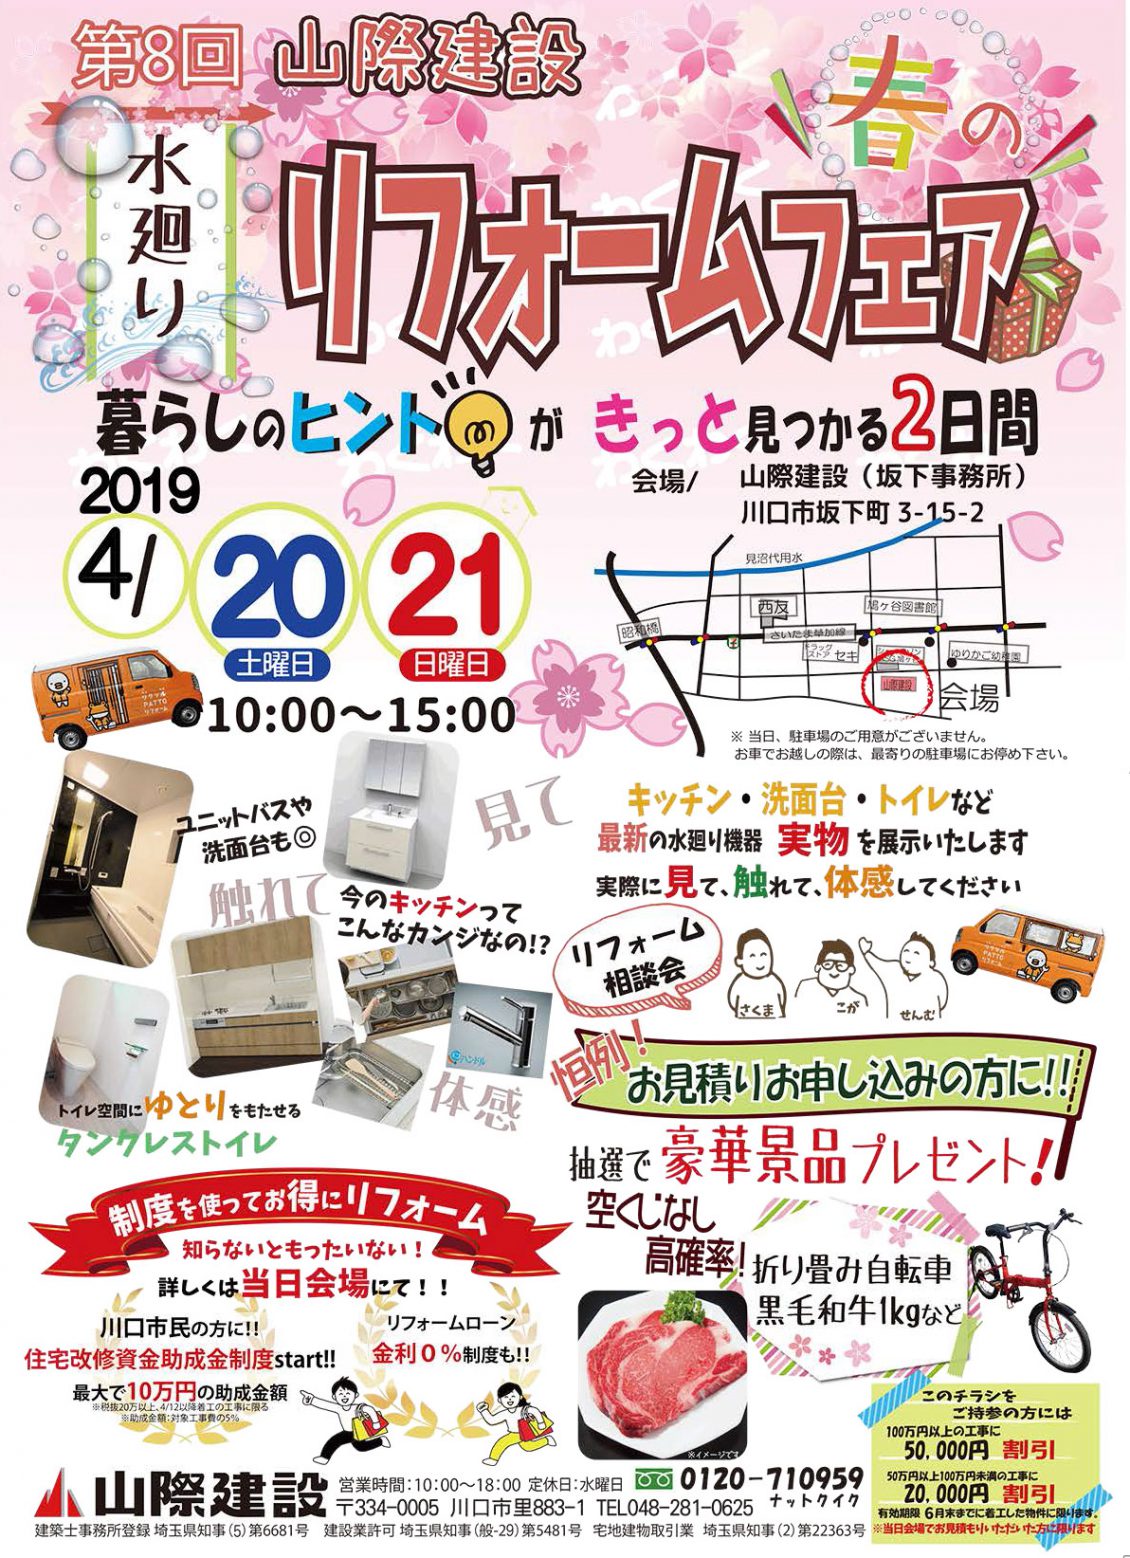 2019年4月20日(土)21日(日)第8回春のリフォームフェア開催!!